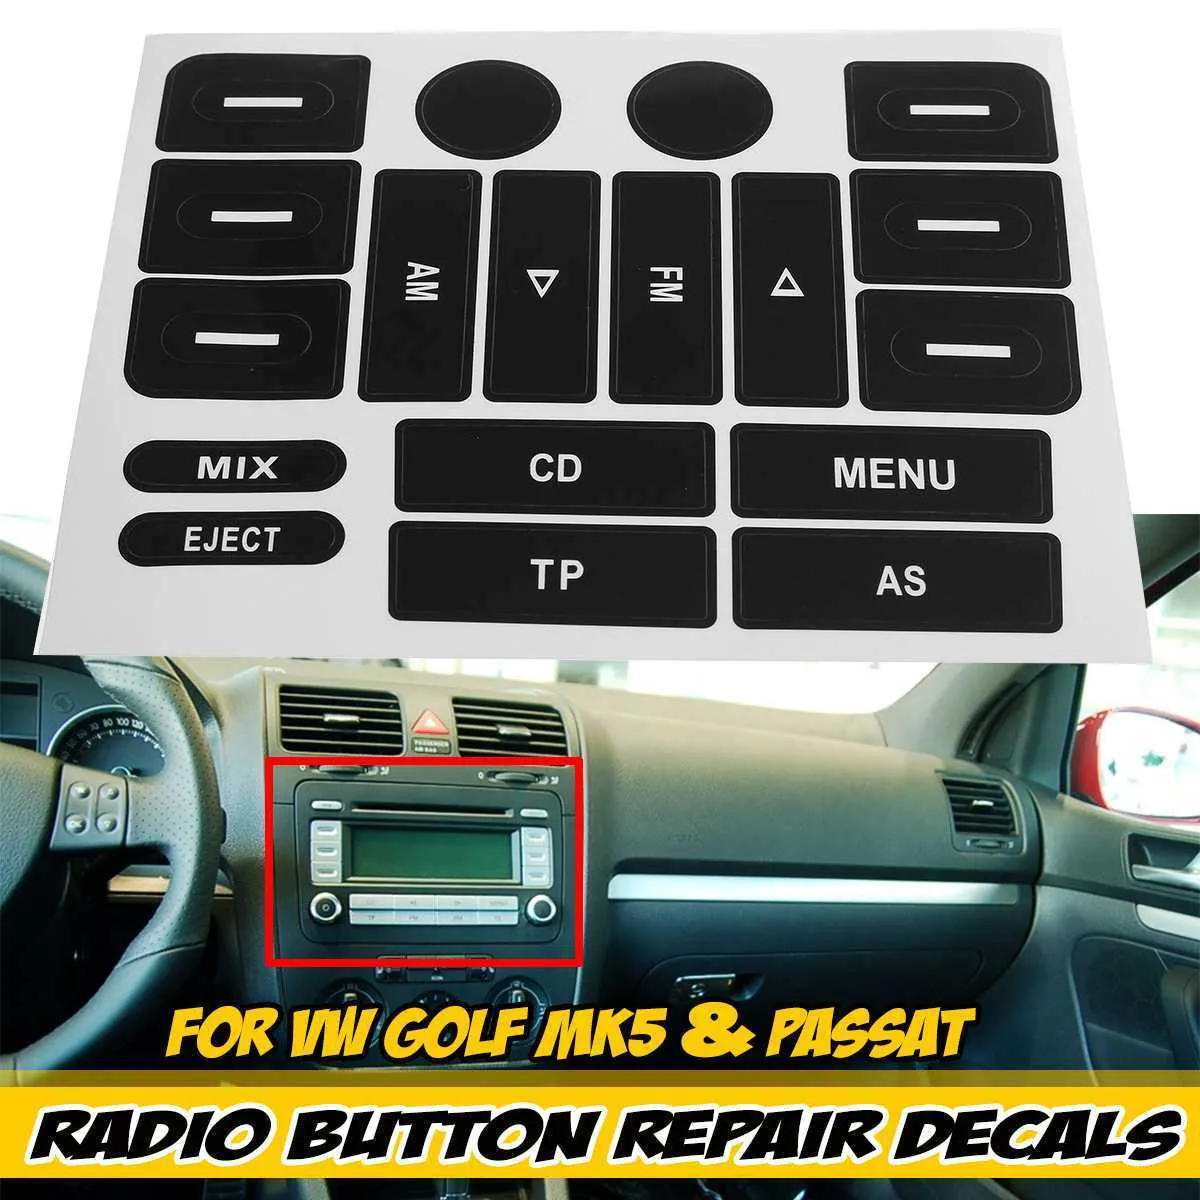 Black Car Radio Button Repair Decals Stickers New Button Repair Sticker Decal For VW For Golf MK5 & For Passat